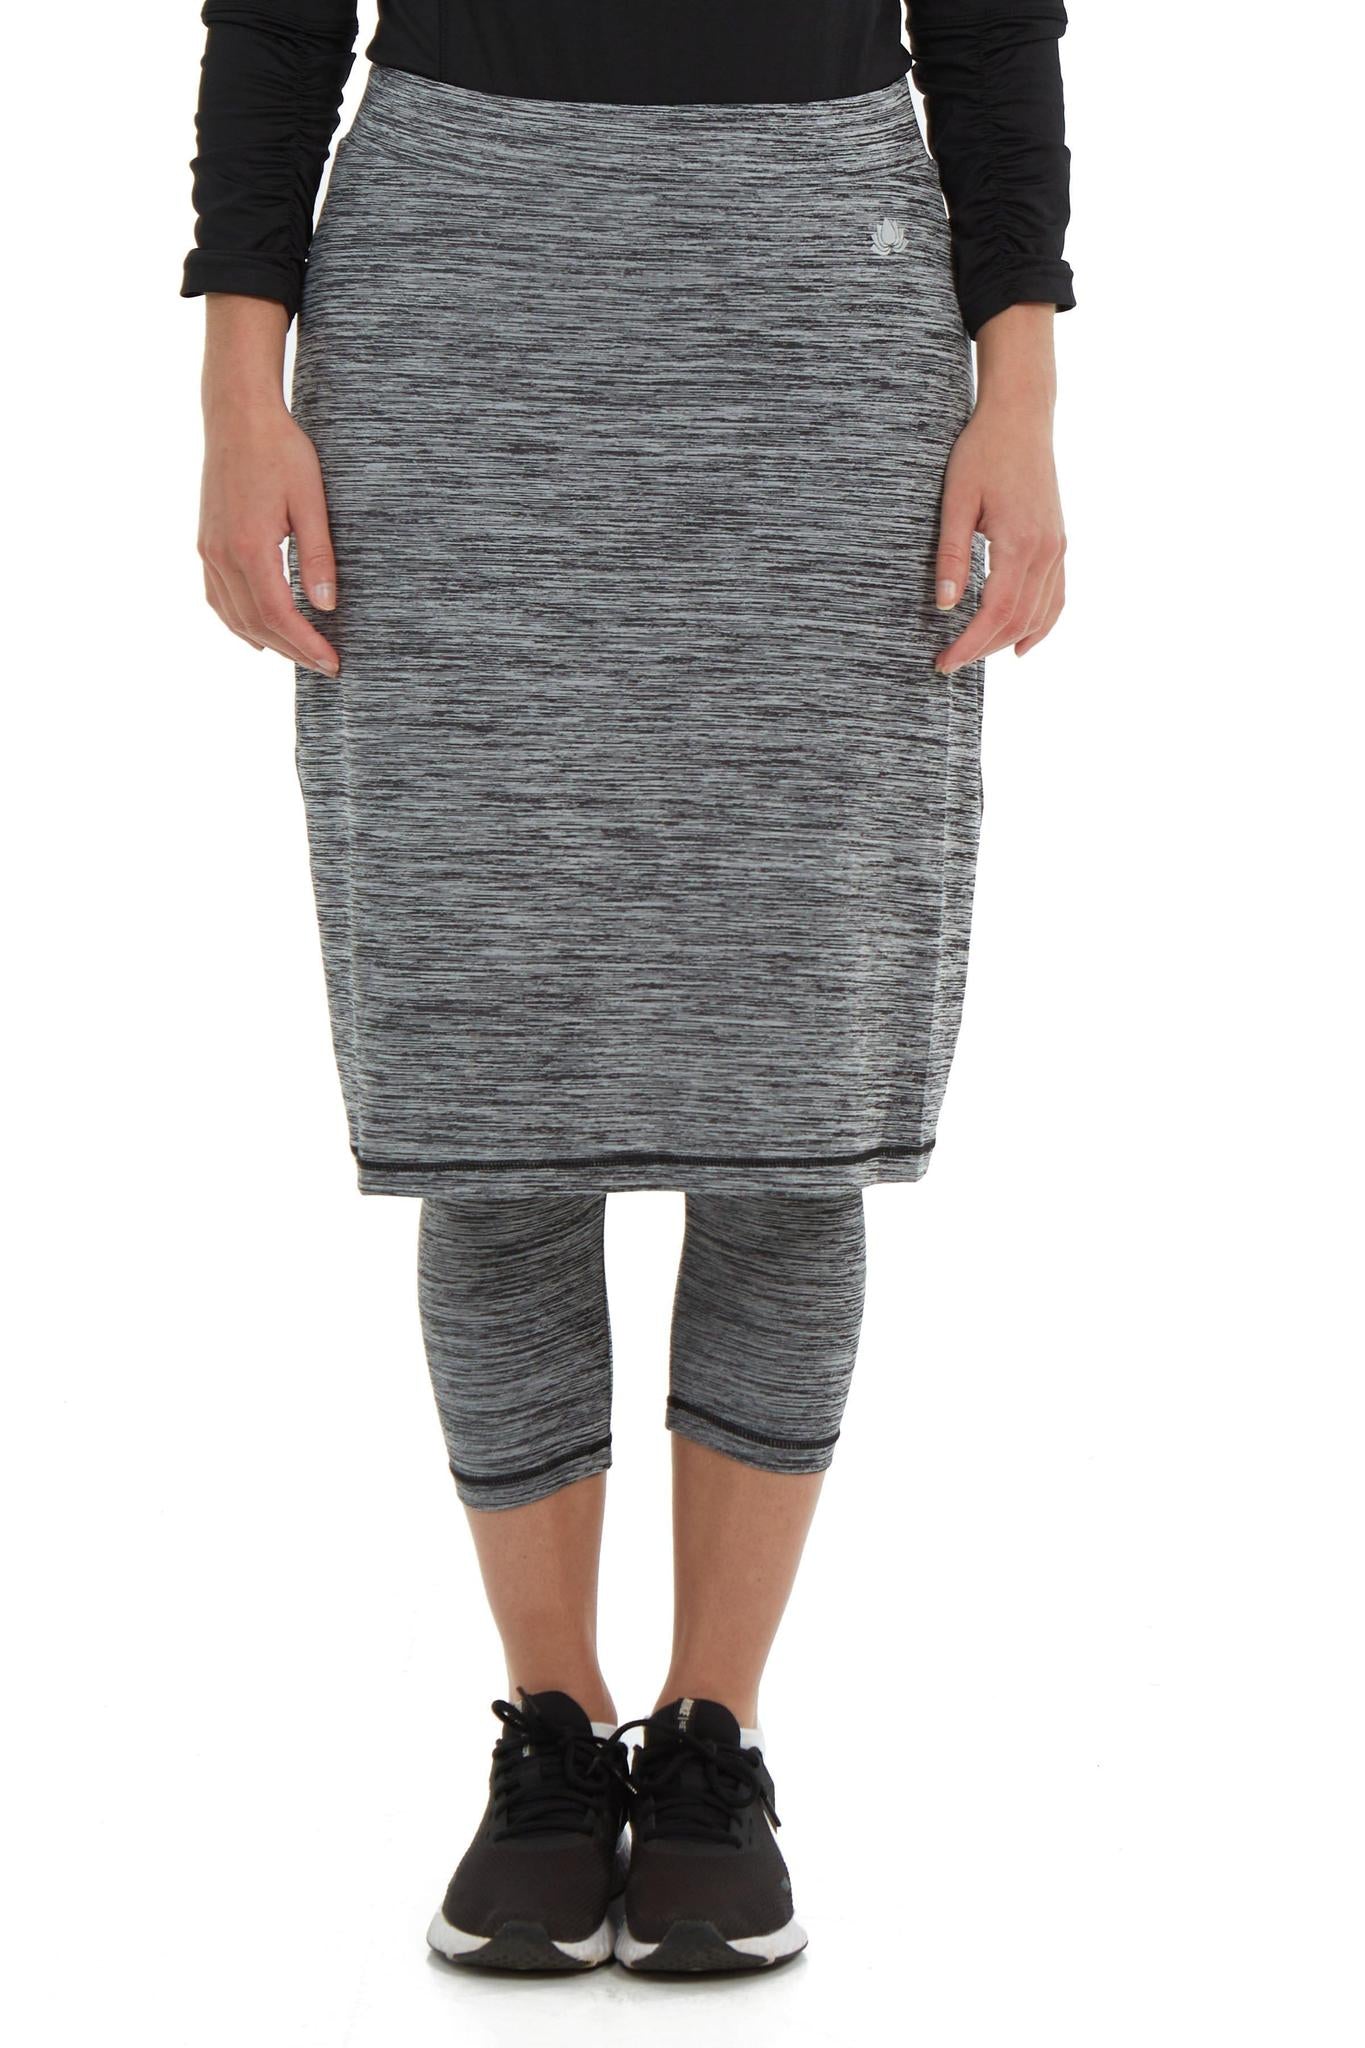 SpaceDye Snoga Athletic Skirt in Grey#N#– Jupe de Abby